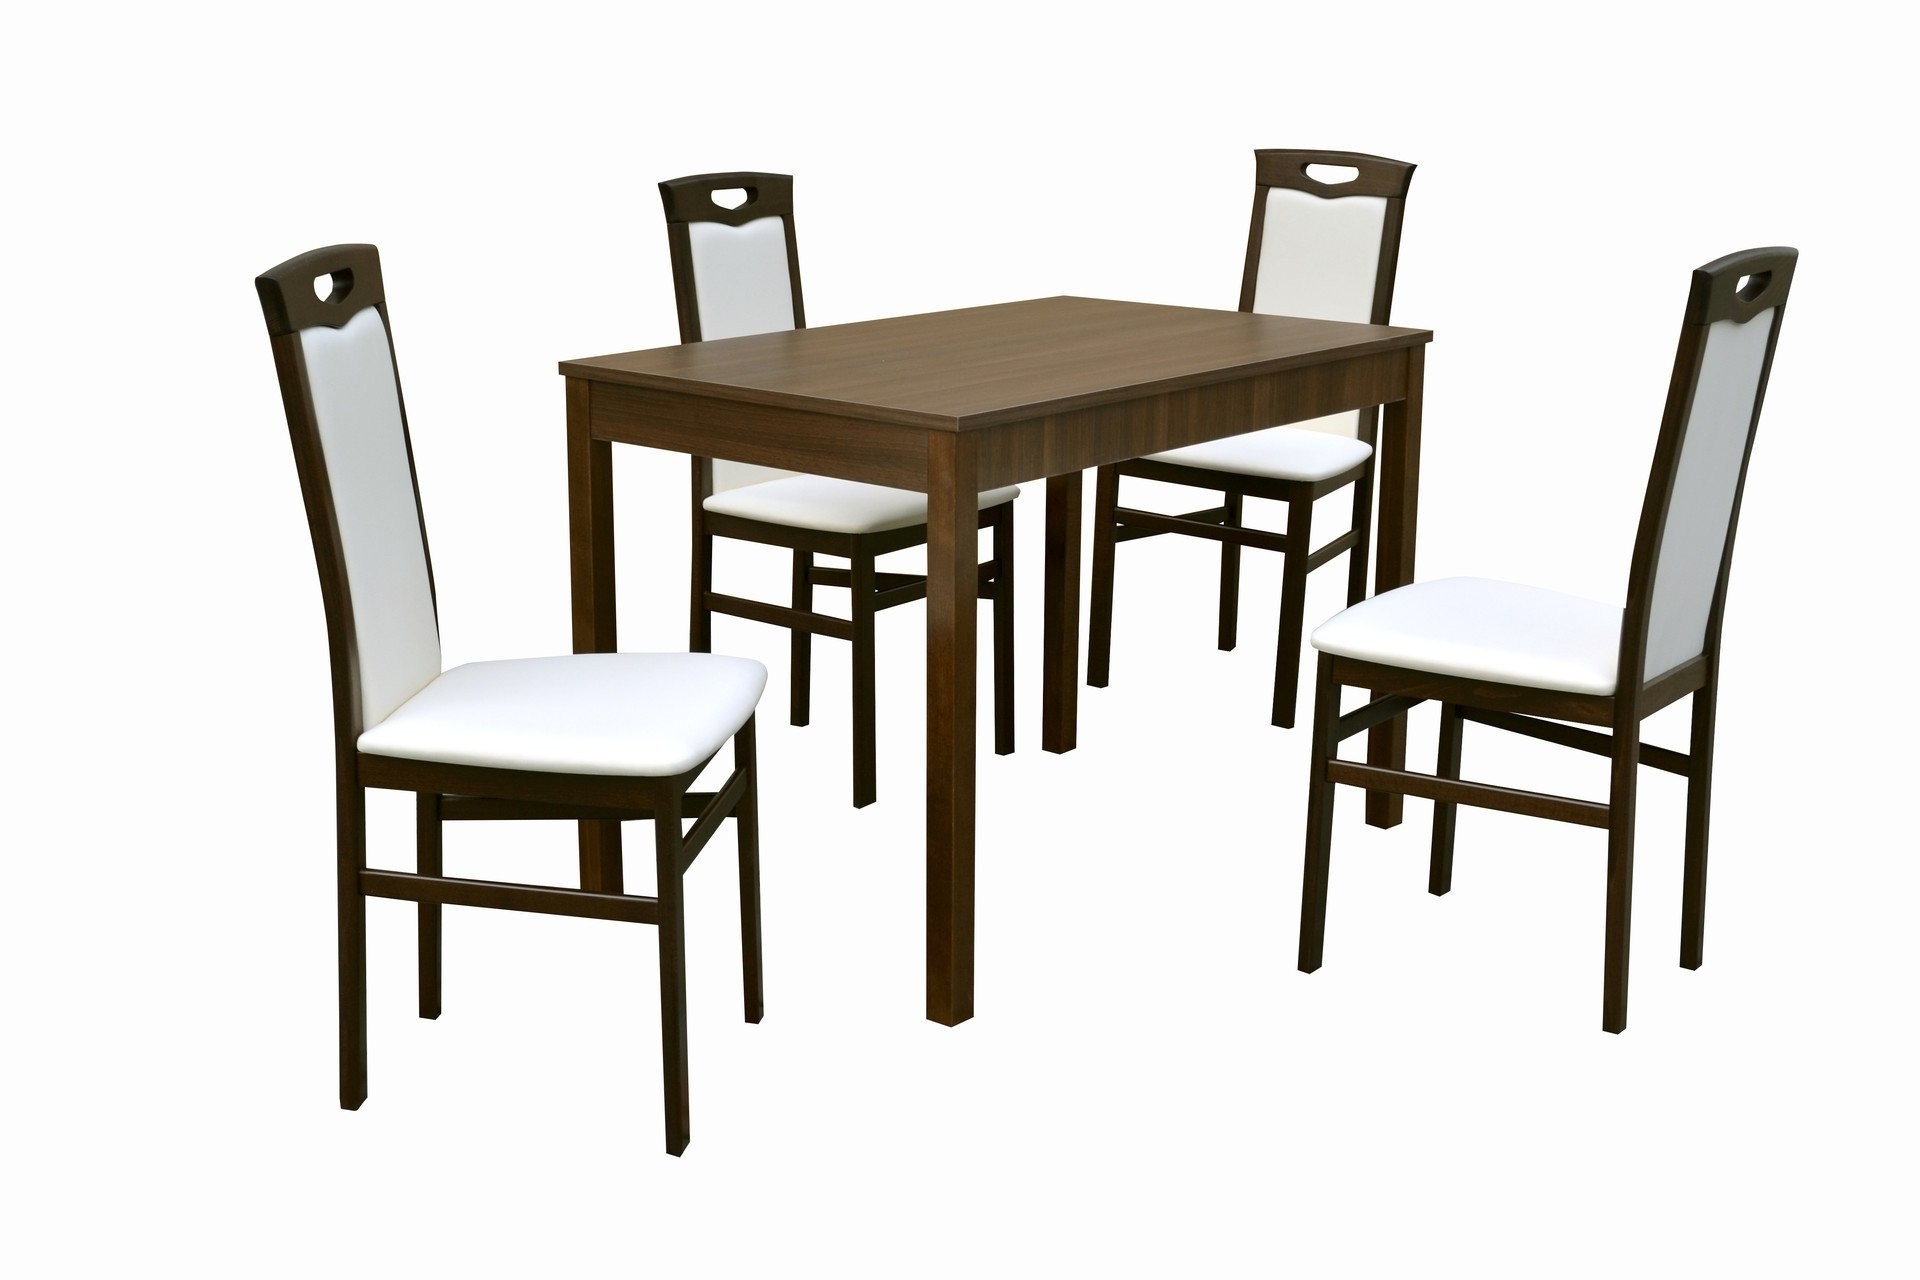 Stôl JUMBO + Stolička BENITO